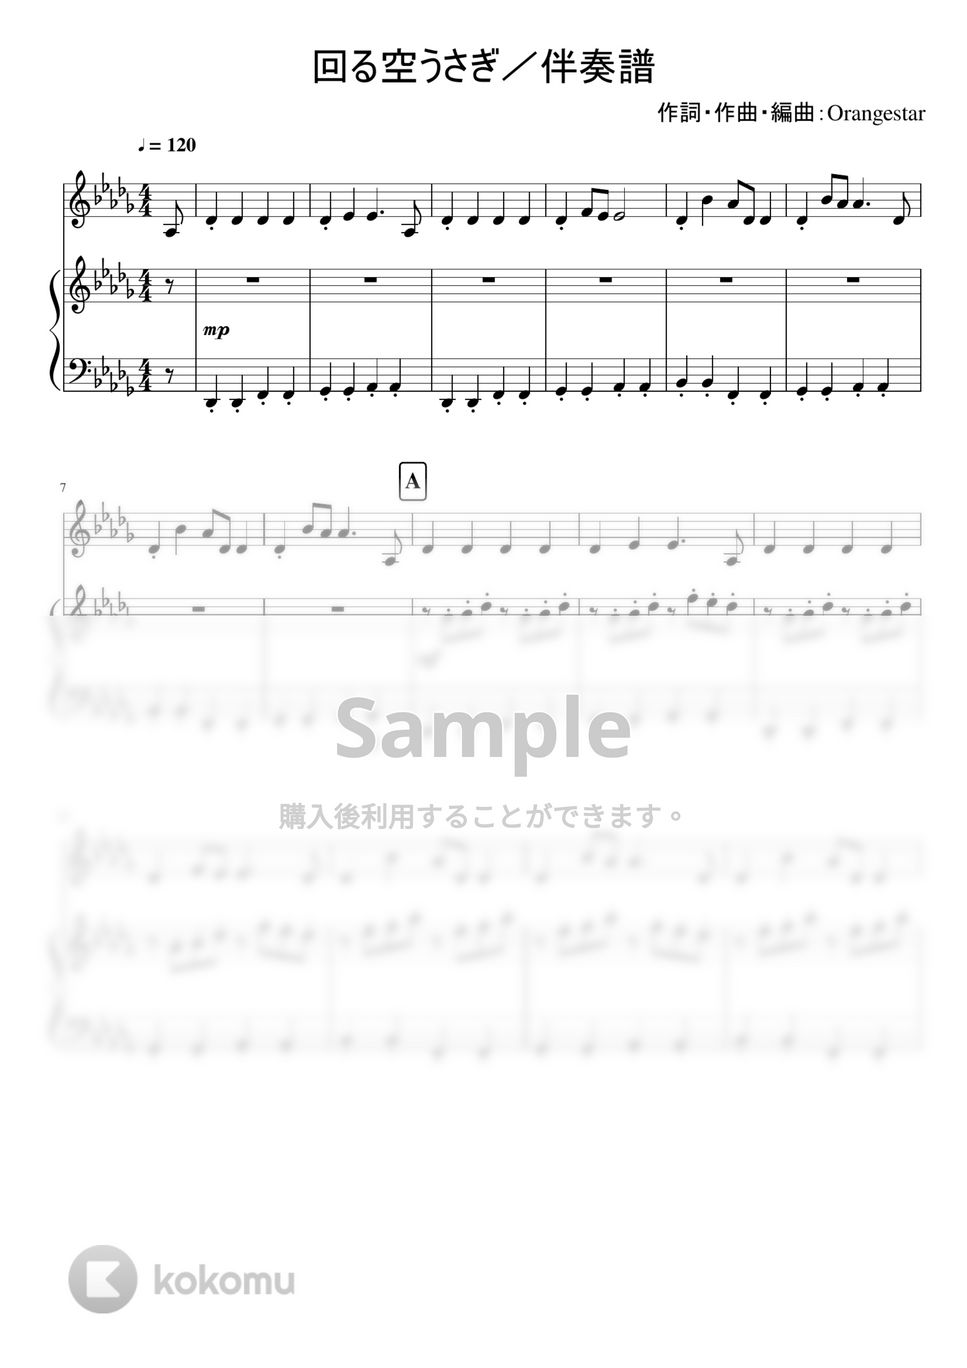 Orangestar - 回る空うさぎ (★★★★☆☆ / メロディ付き伴奏譜) by soup-majo